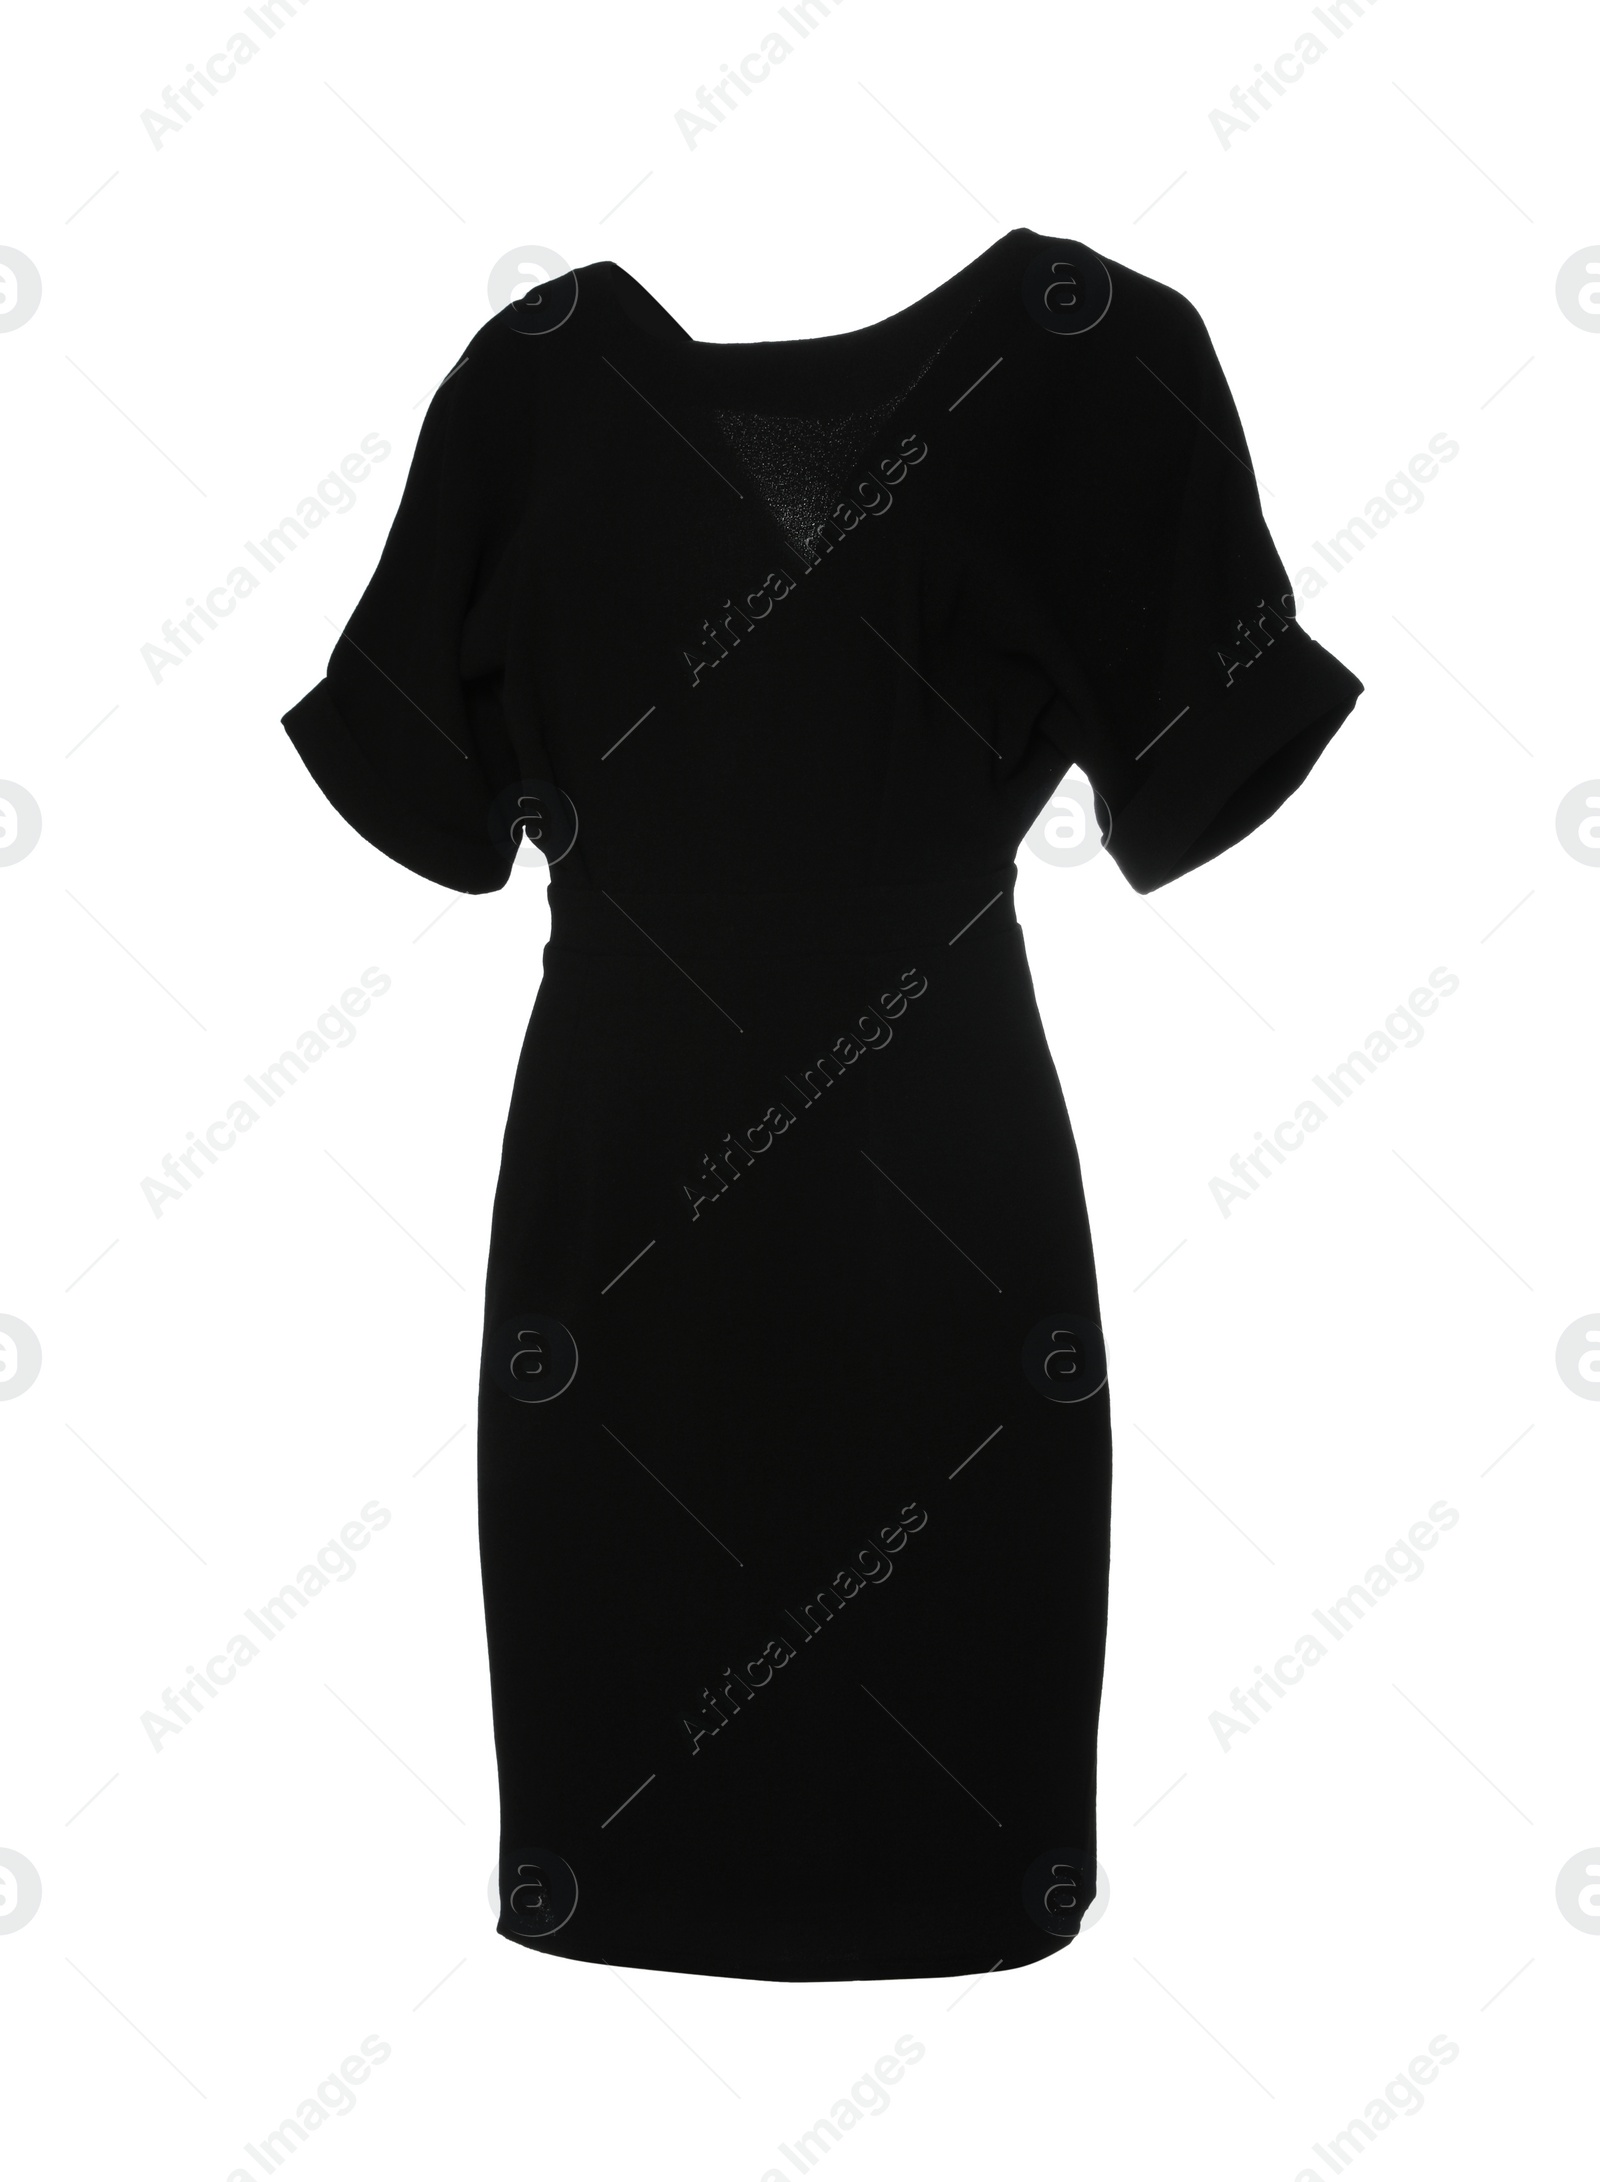 Photo of Beautiful short black dress on white background